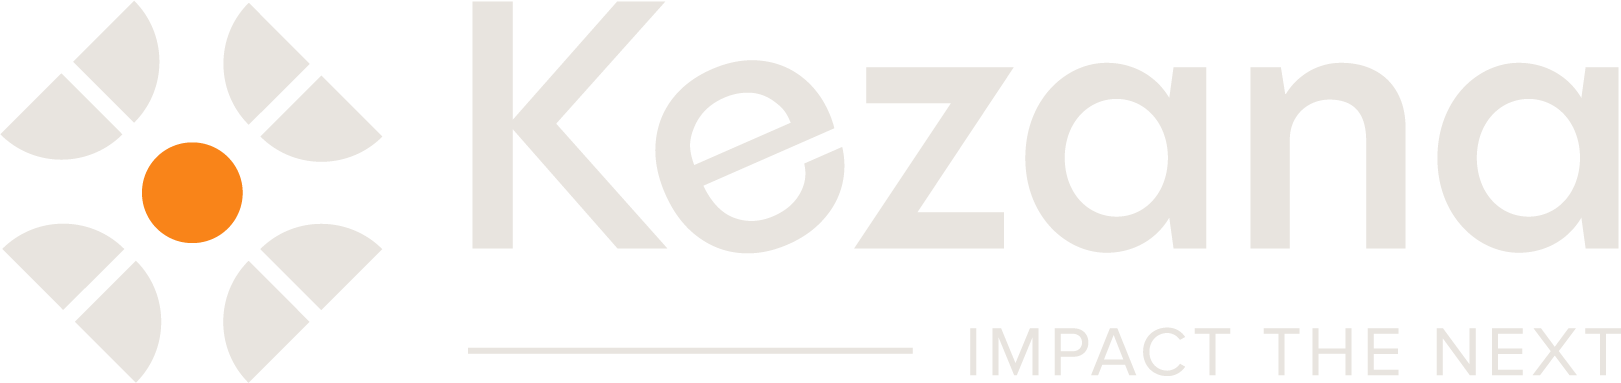 Kezana logo